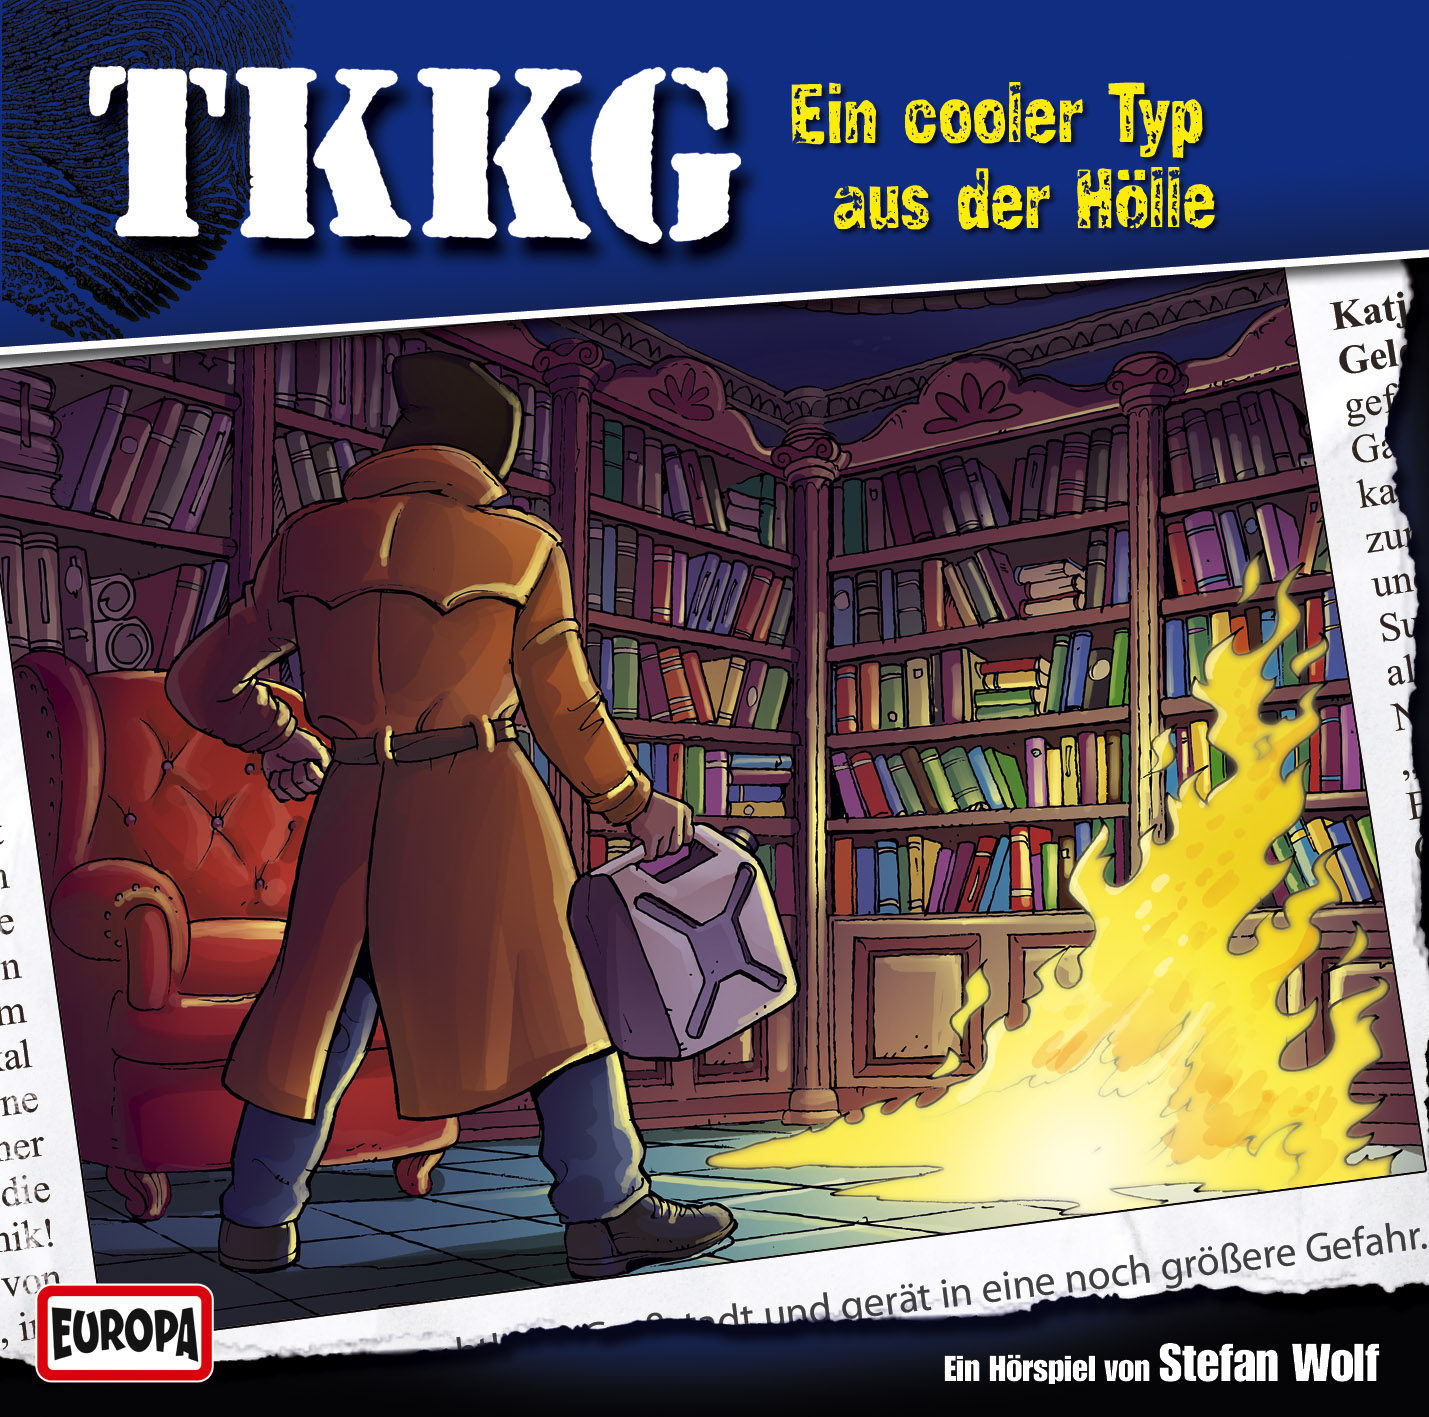 TKKG: Ein cooler Typ aus der Hölle